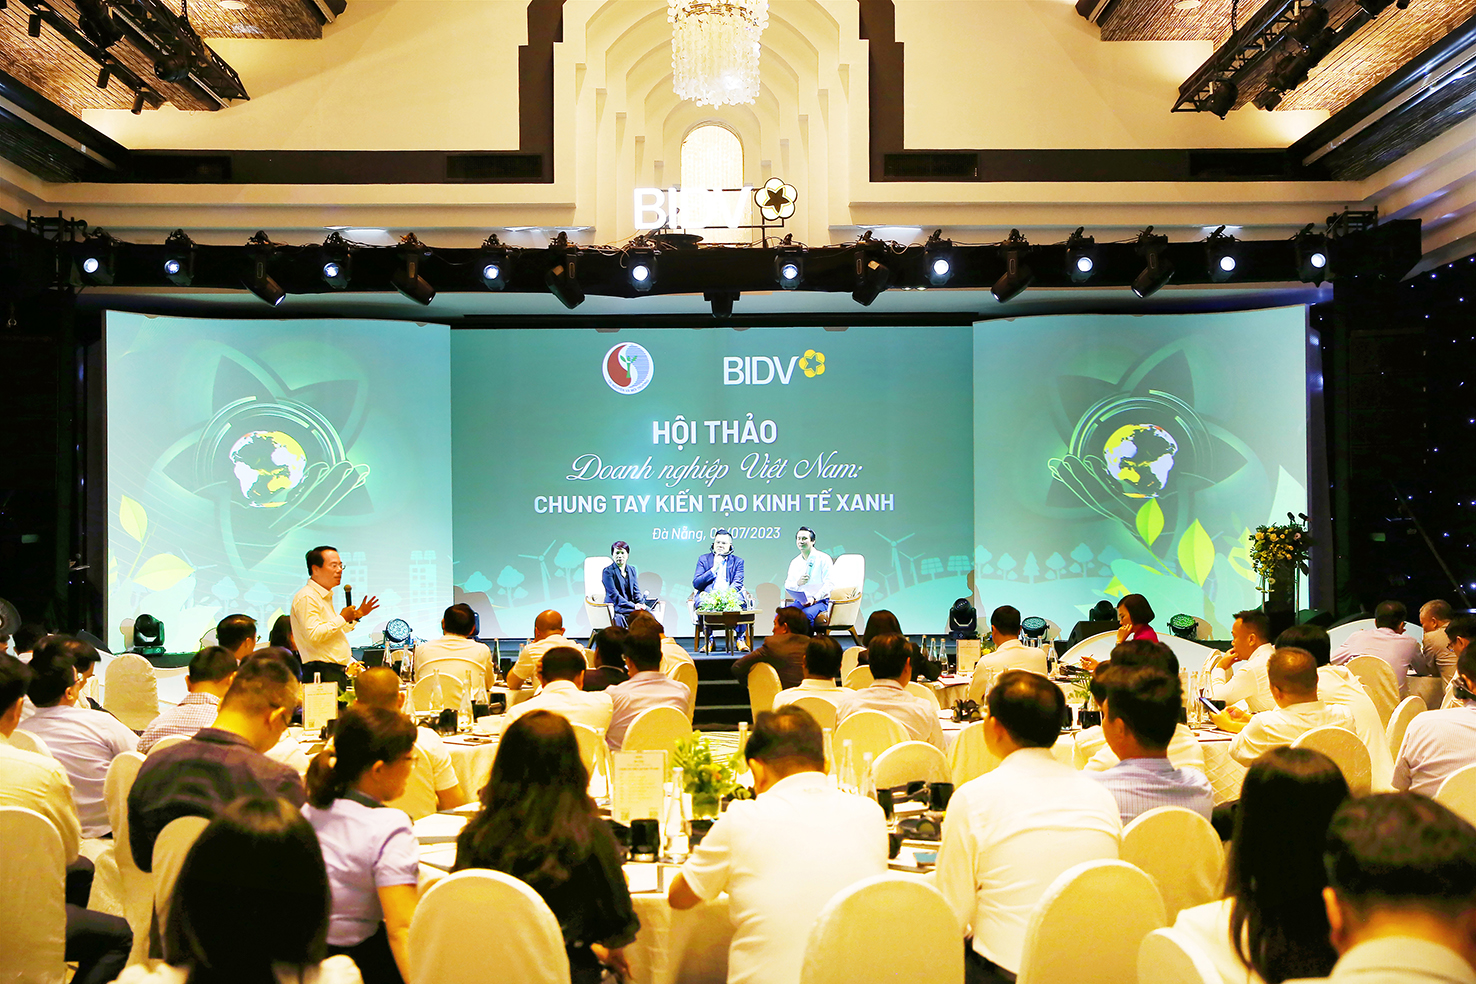 BIDV tổ chức Hội thảo “Doanh nghiệp Việt Nam - Chung tay kiến tạo Kinh tế Xanh” - Ảnh 3.